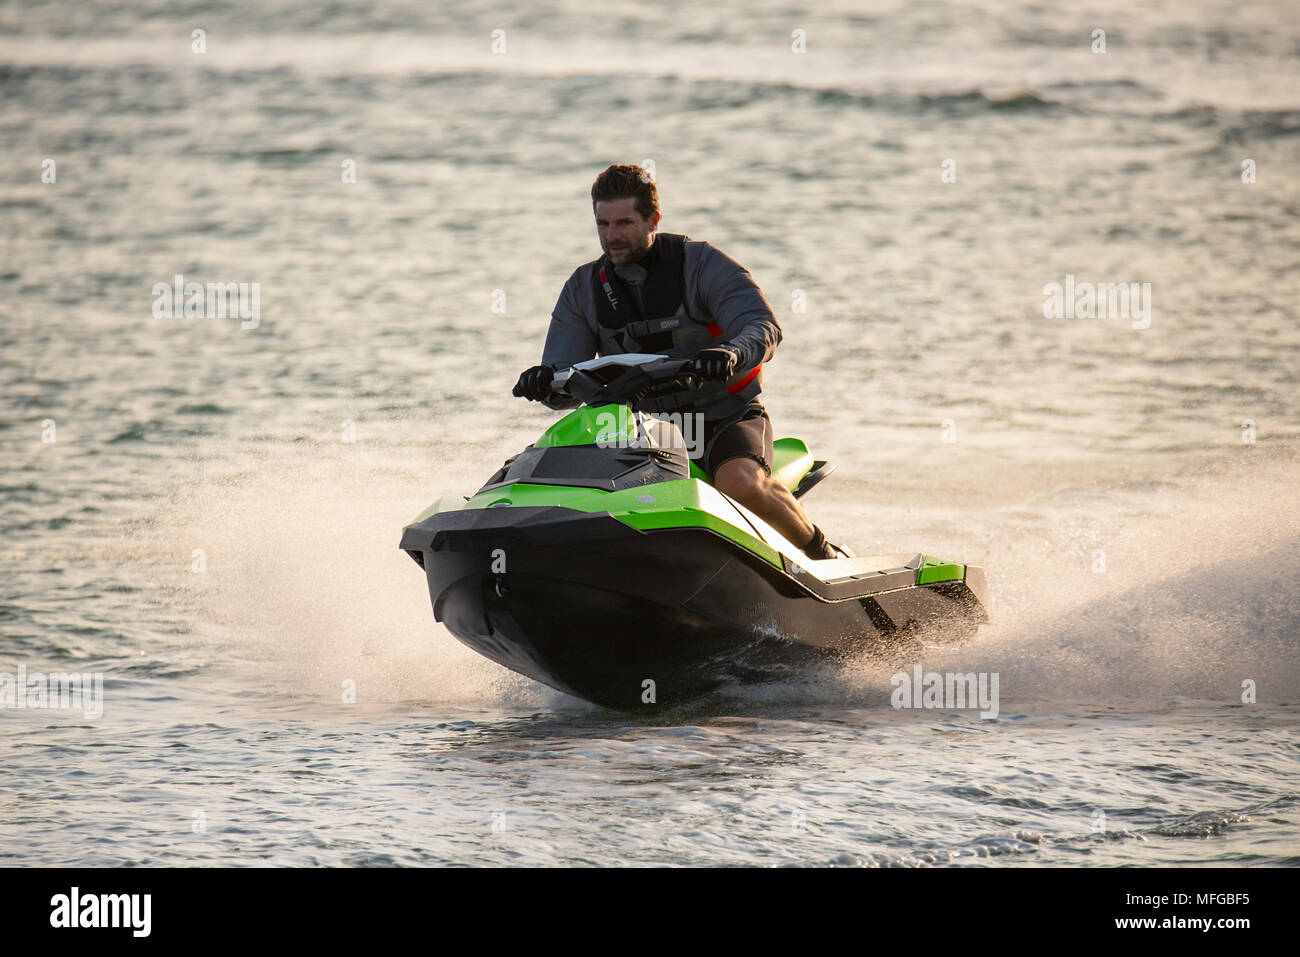 Homme d'âge moyen portant un gilet de vie conduit une motomarine Jet ski le long d'une mer calme. Banque D'Images